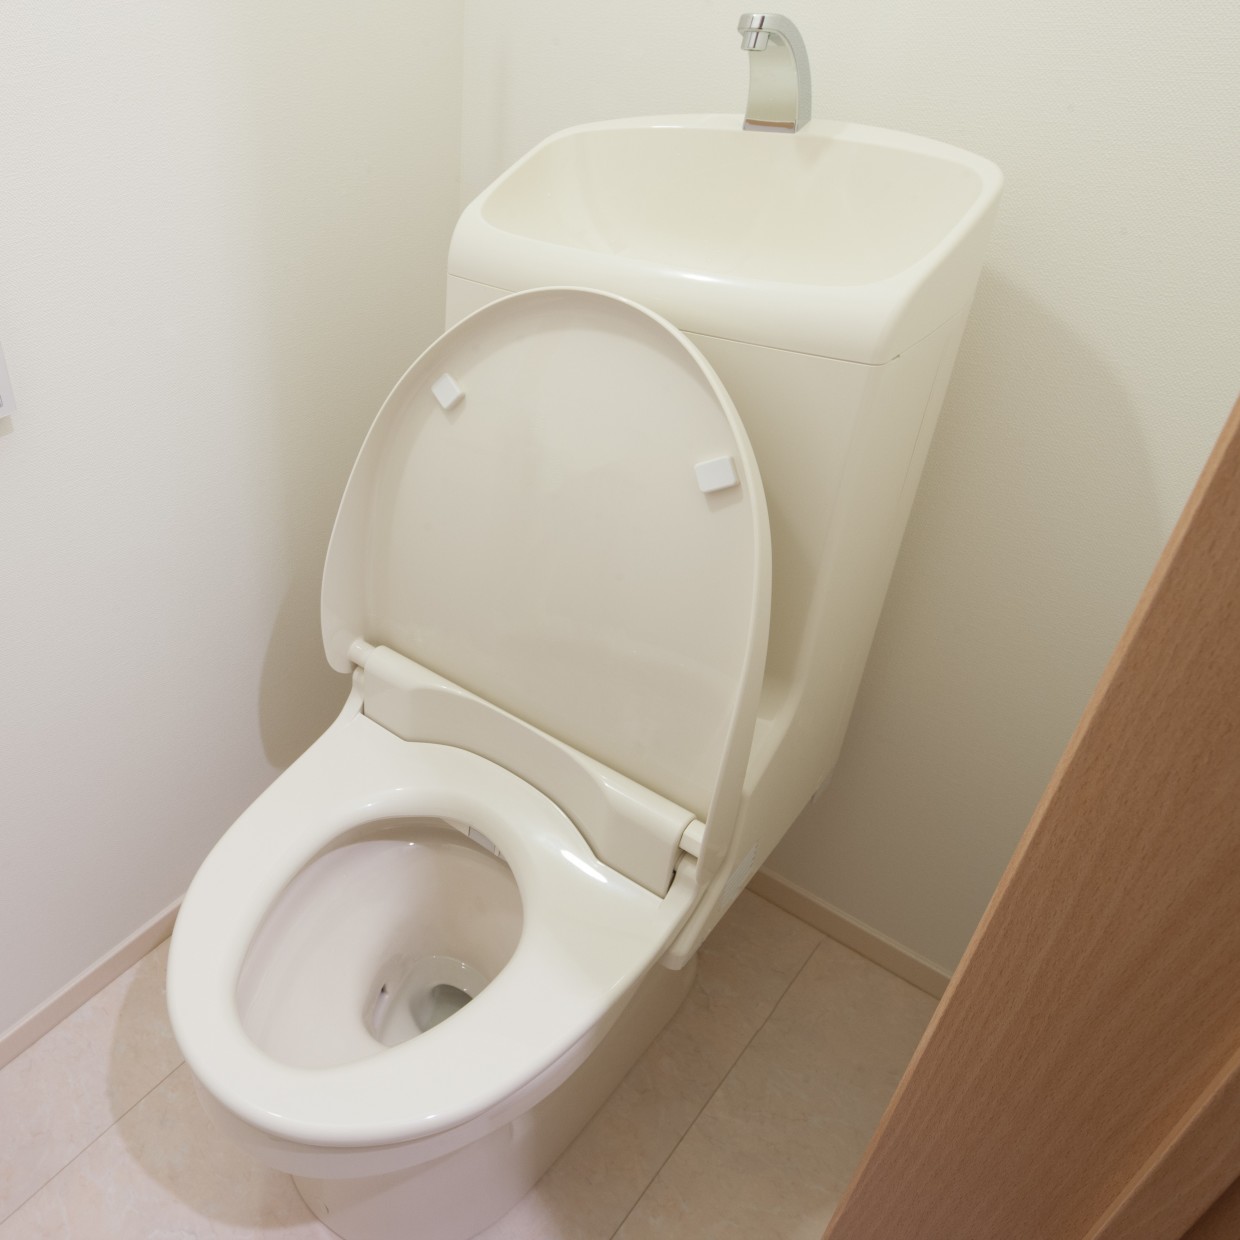  「トイレのニオイ」自分では気づいてないかも…。見落としがちな“掃除すべき4つの場所”とは？ 